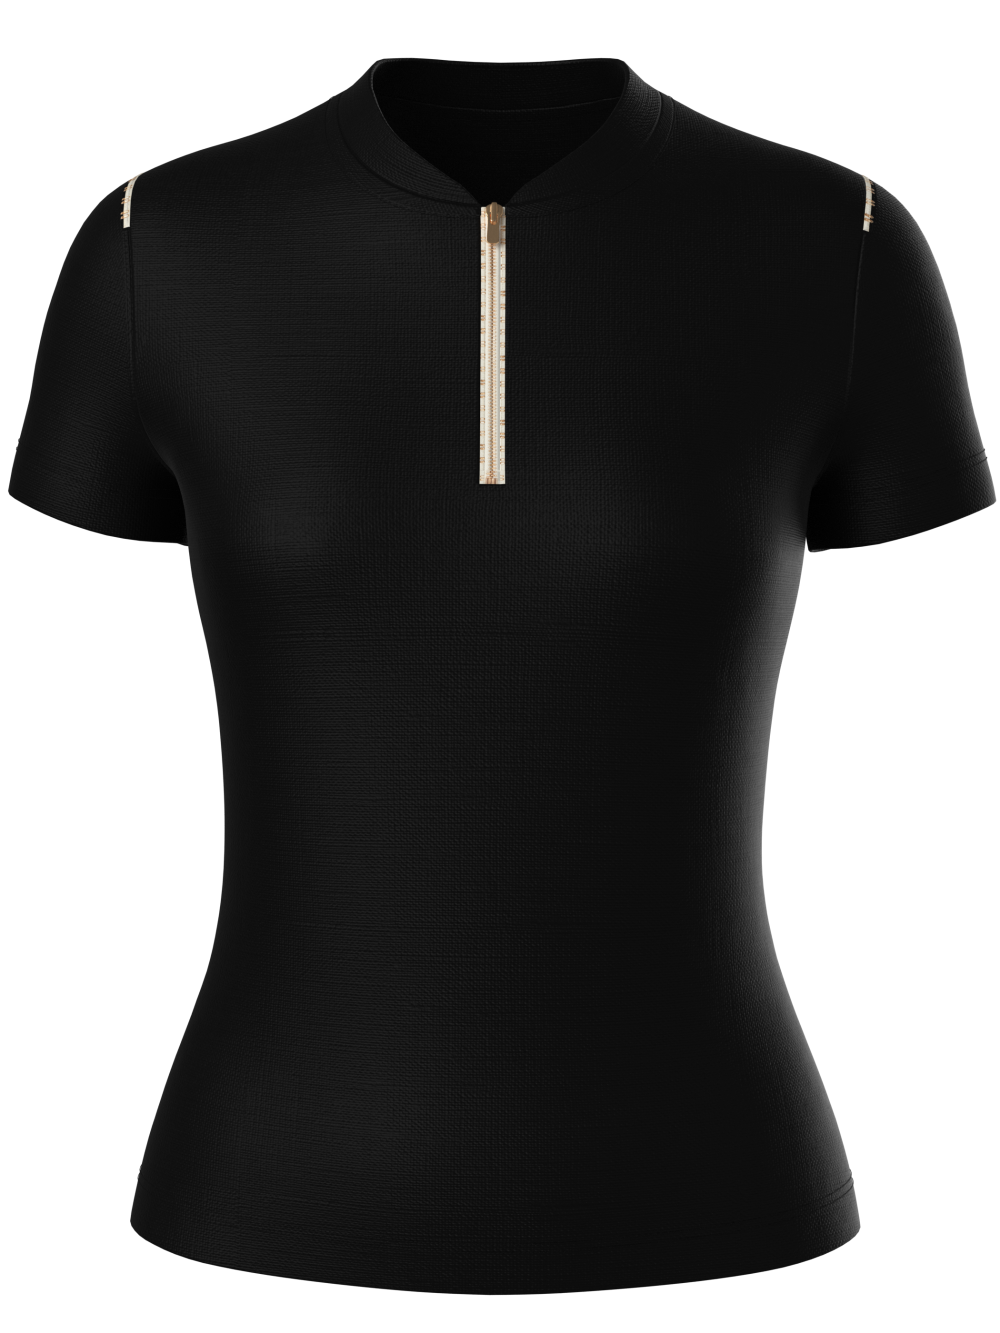 Brescia New_Sun Safe Antibacterial Short Sleeve Golf Shirt